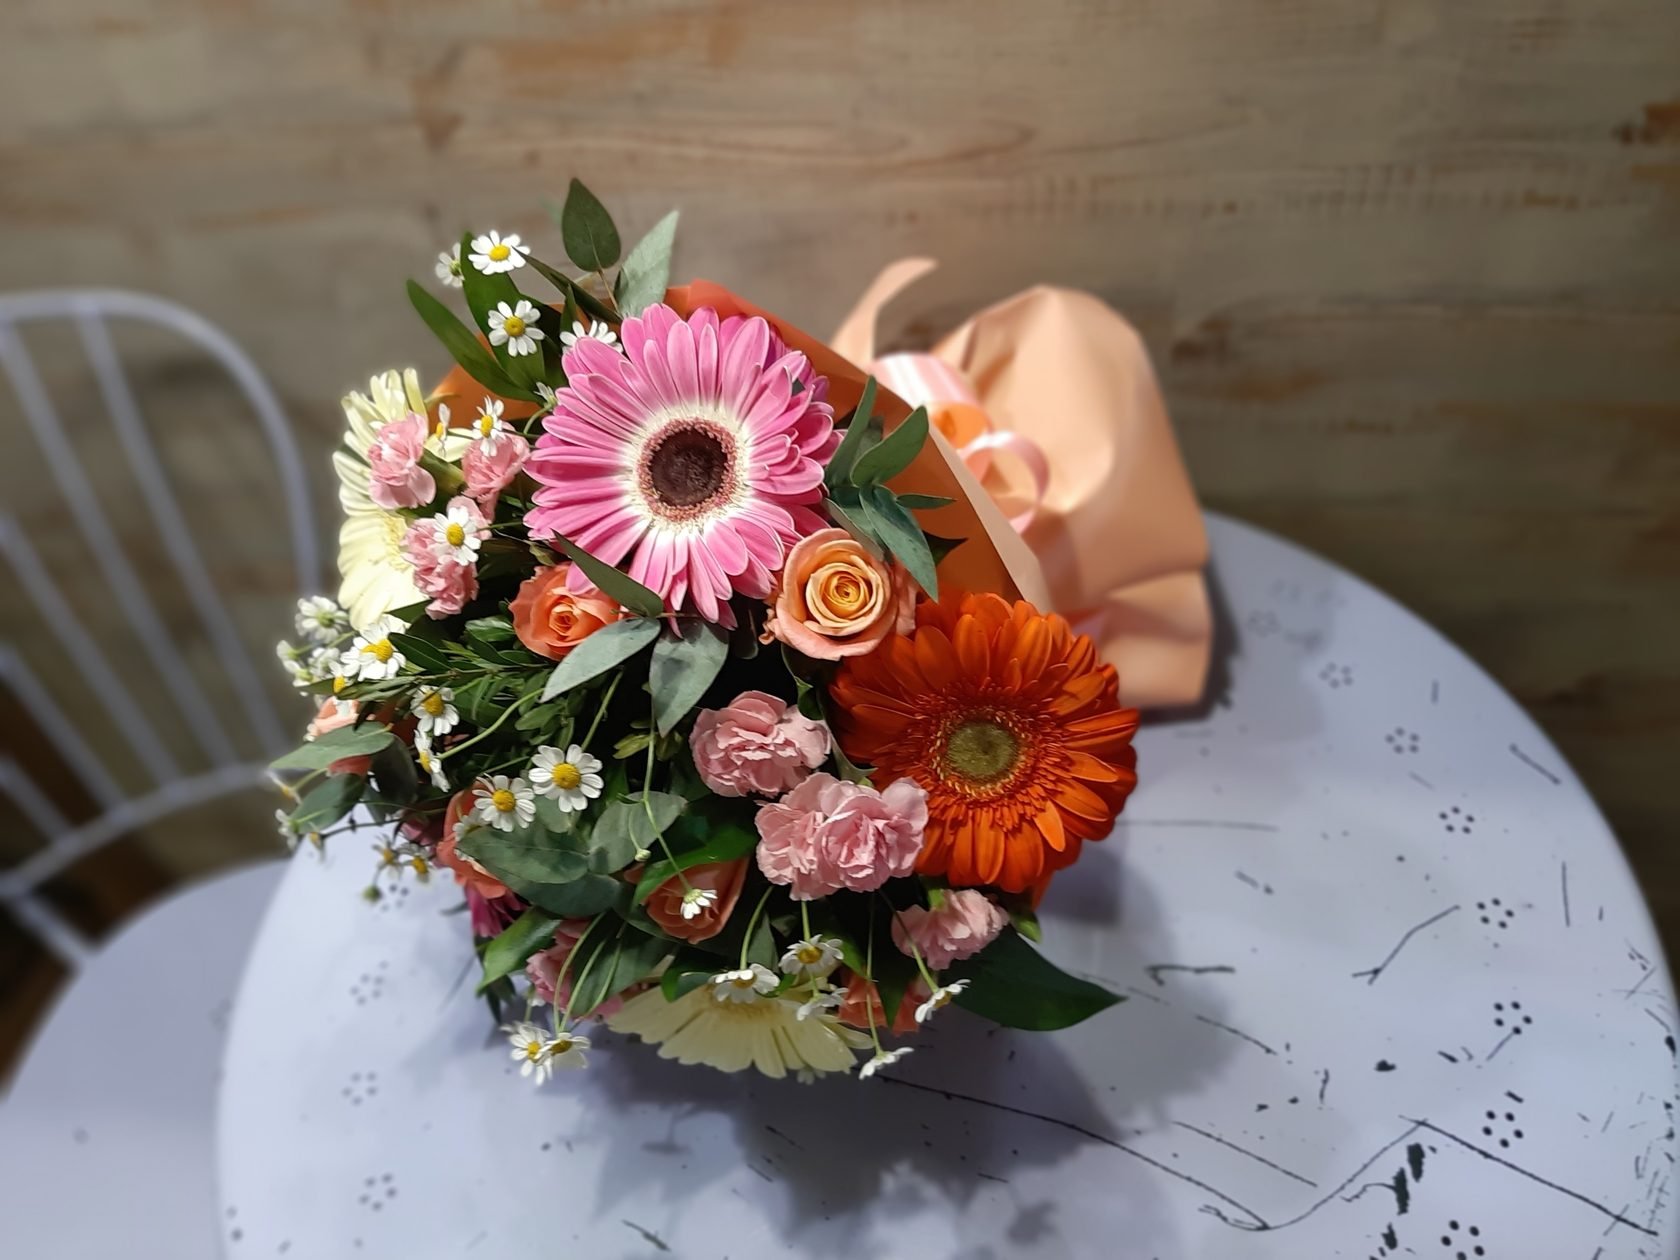 Букет невесты – гербера: потрясающие идеи с фото, свадебный монобукет с белыми герберами, сочетание с красными розами, самые разнообразные формы и декор